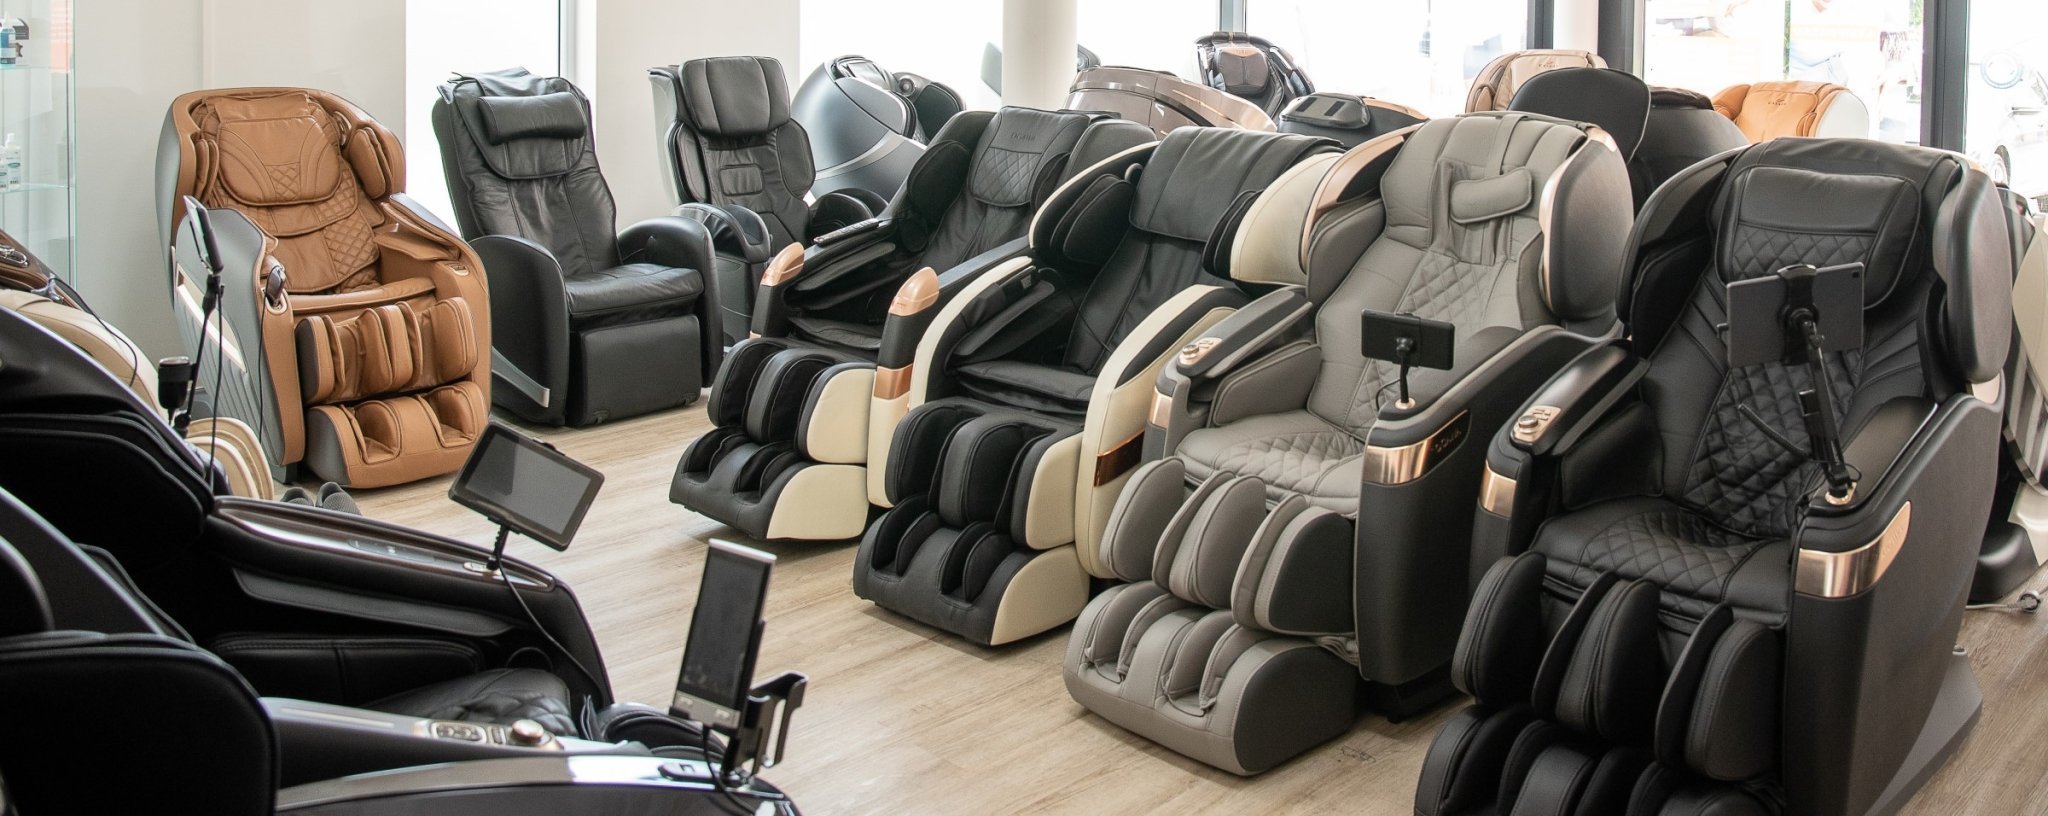 Ghế massage của chúng tôi OUTLET - Ghế massage thế giới